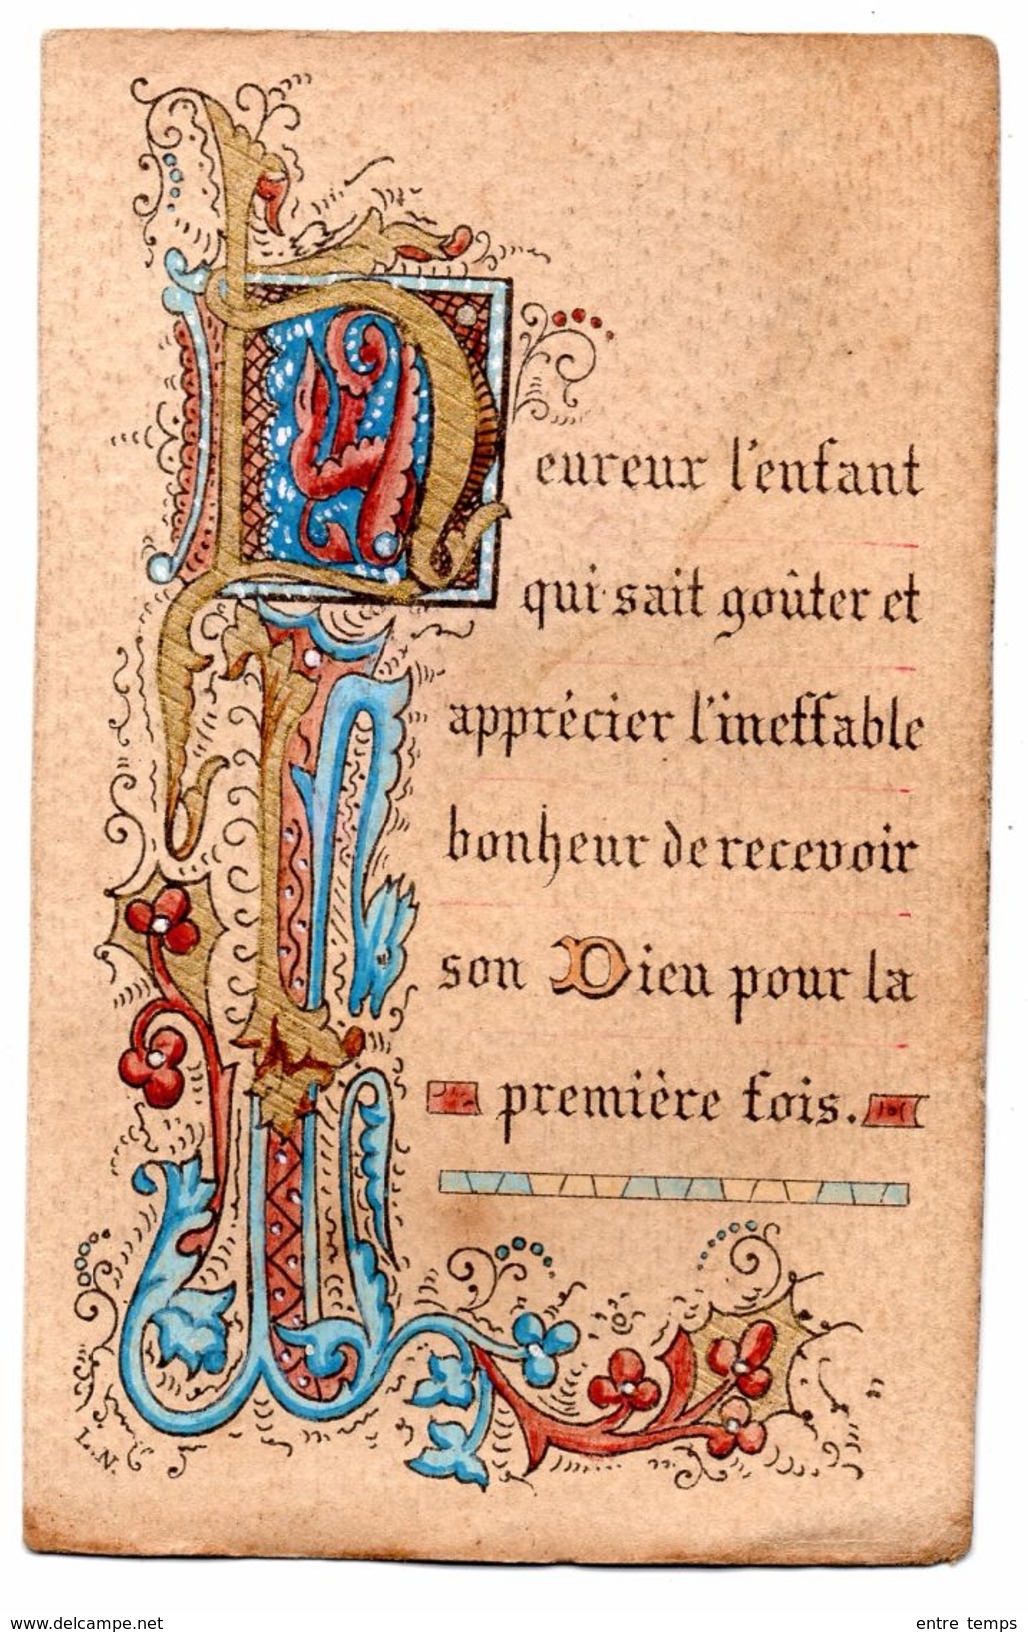 Image Religieuse Souvenir Communion Saint Gaultier 1890 - Devotion Images